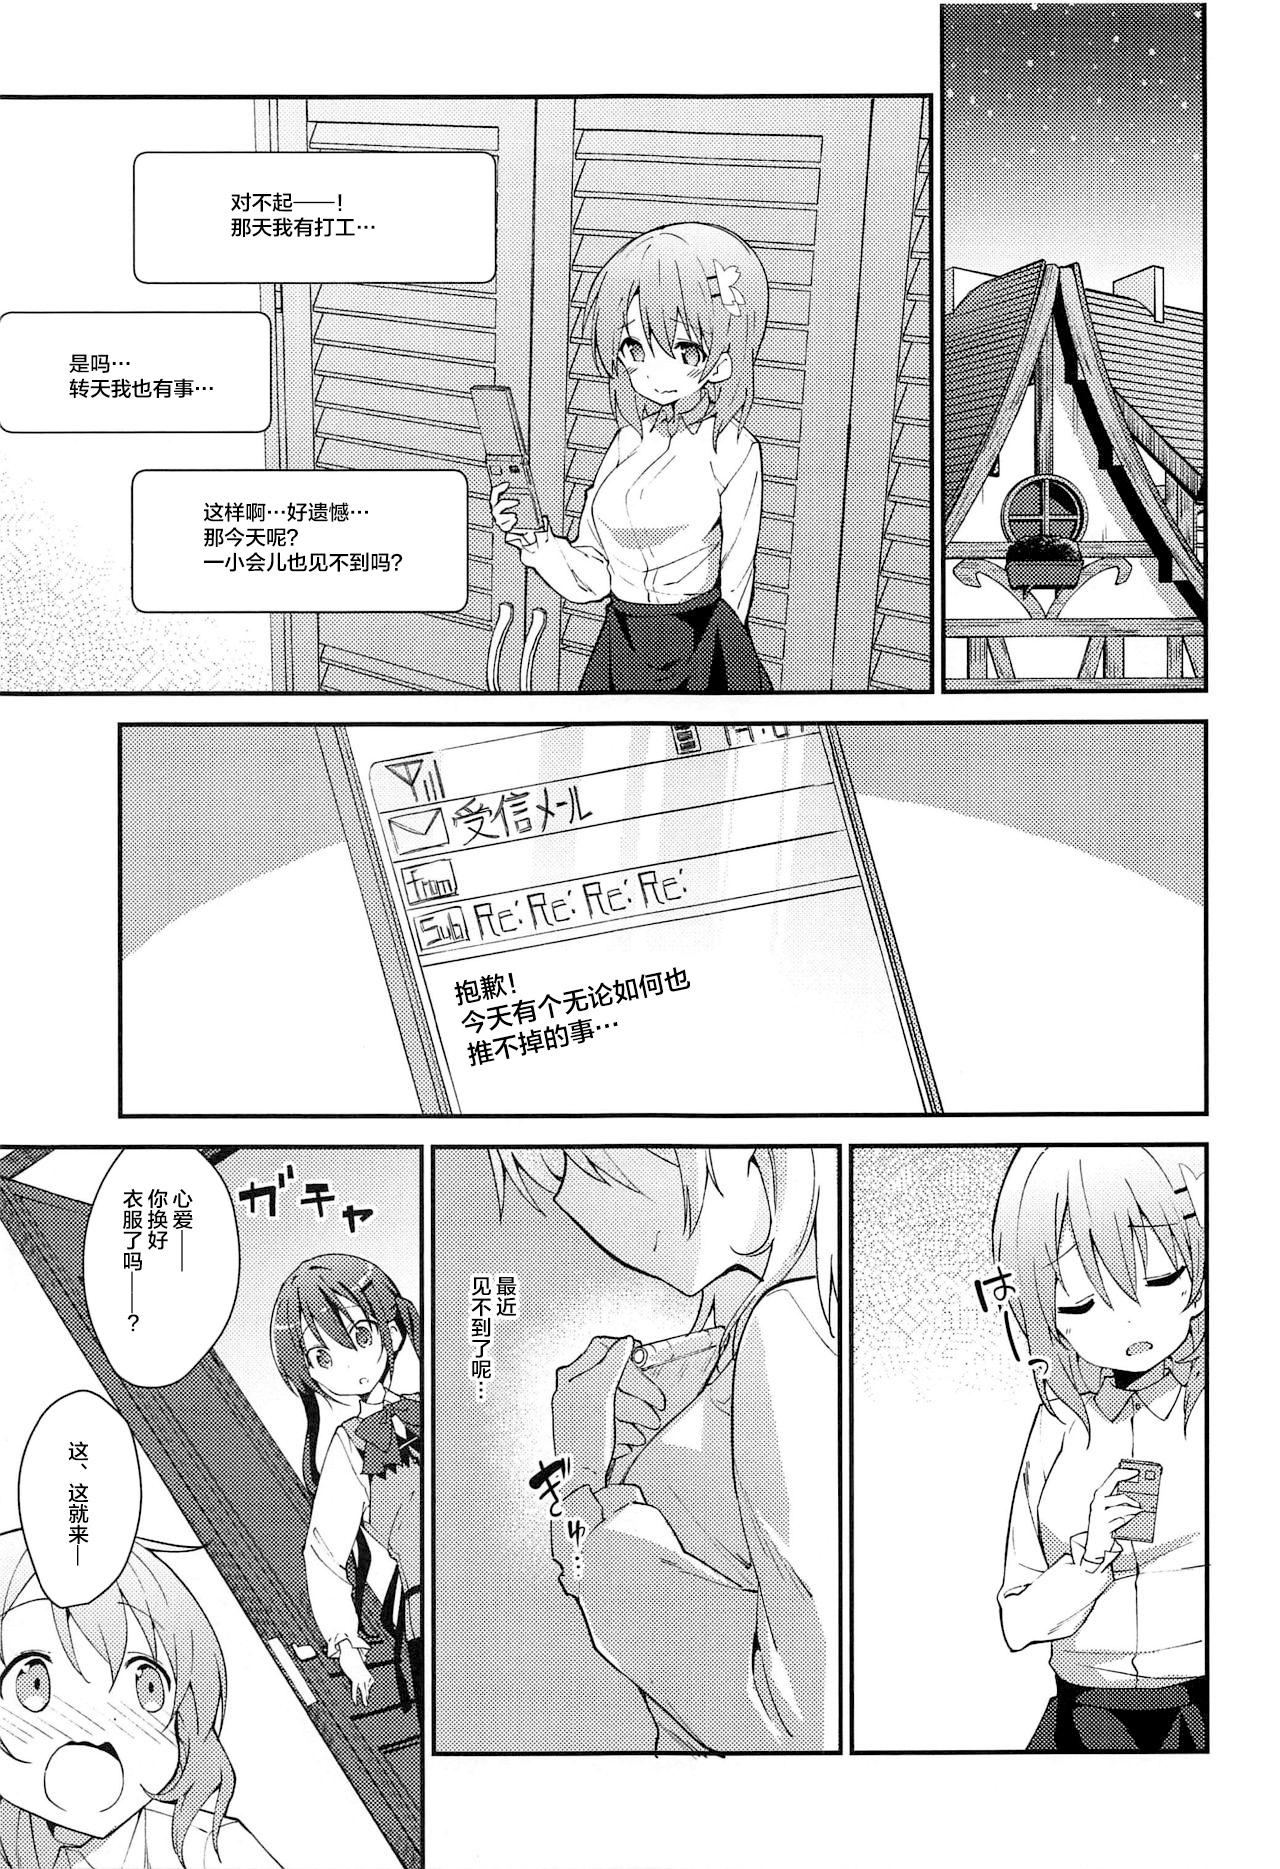 Cock Attakai Kokoa wa Ikaga desu ka? - How about warm cocoa? - Gochuumon wa usagi desu ka Leather - Page 5